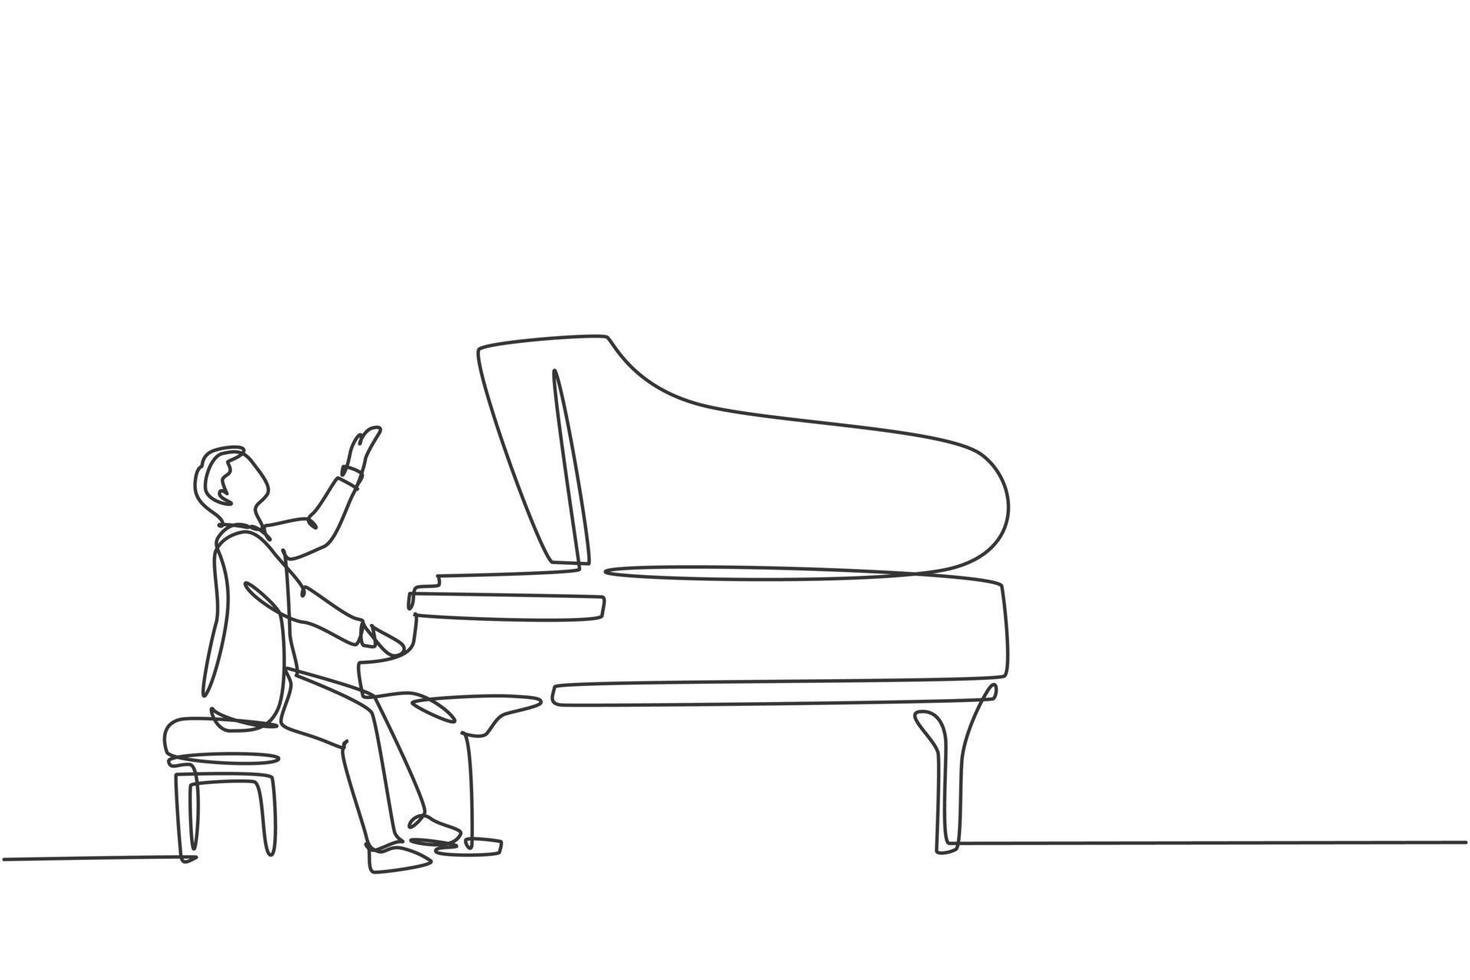 Eine durchgehende Strichzeichnung eines jungen, glücklichen männlichen Pianisten, der auf dem Musikkonzert-Theaterfestival klassischen Flügel spielt. Musiker Künstler Performance Konzept Single Line Draw Design Vector Illustration